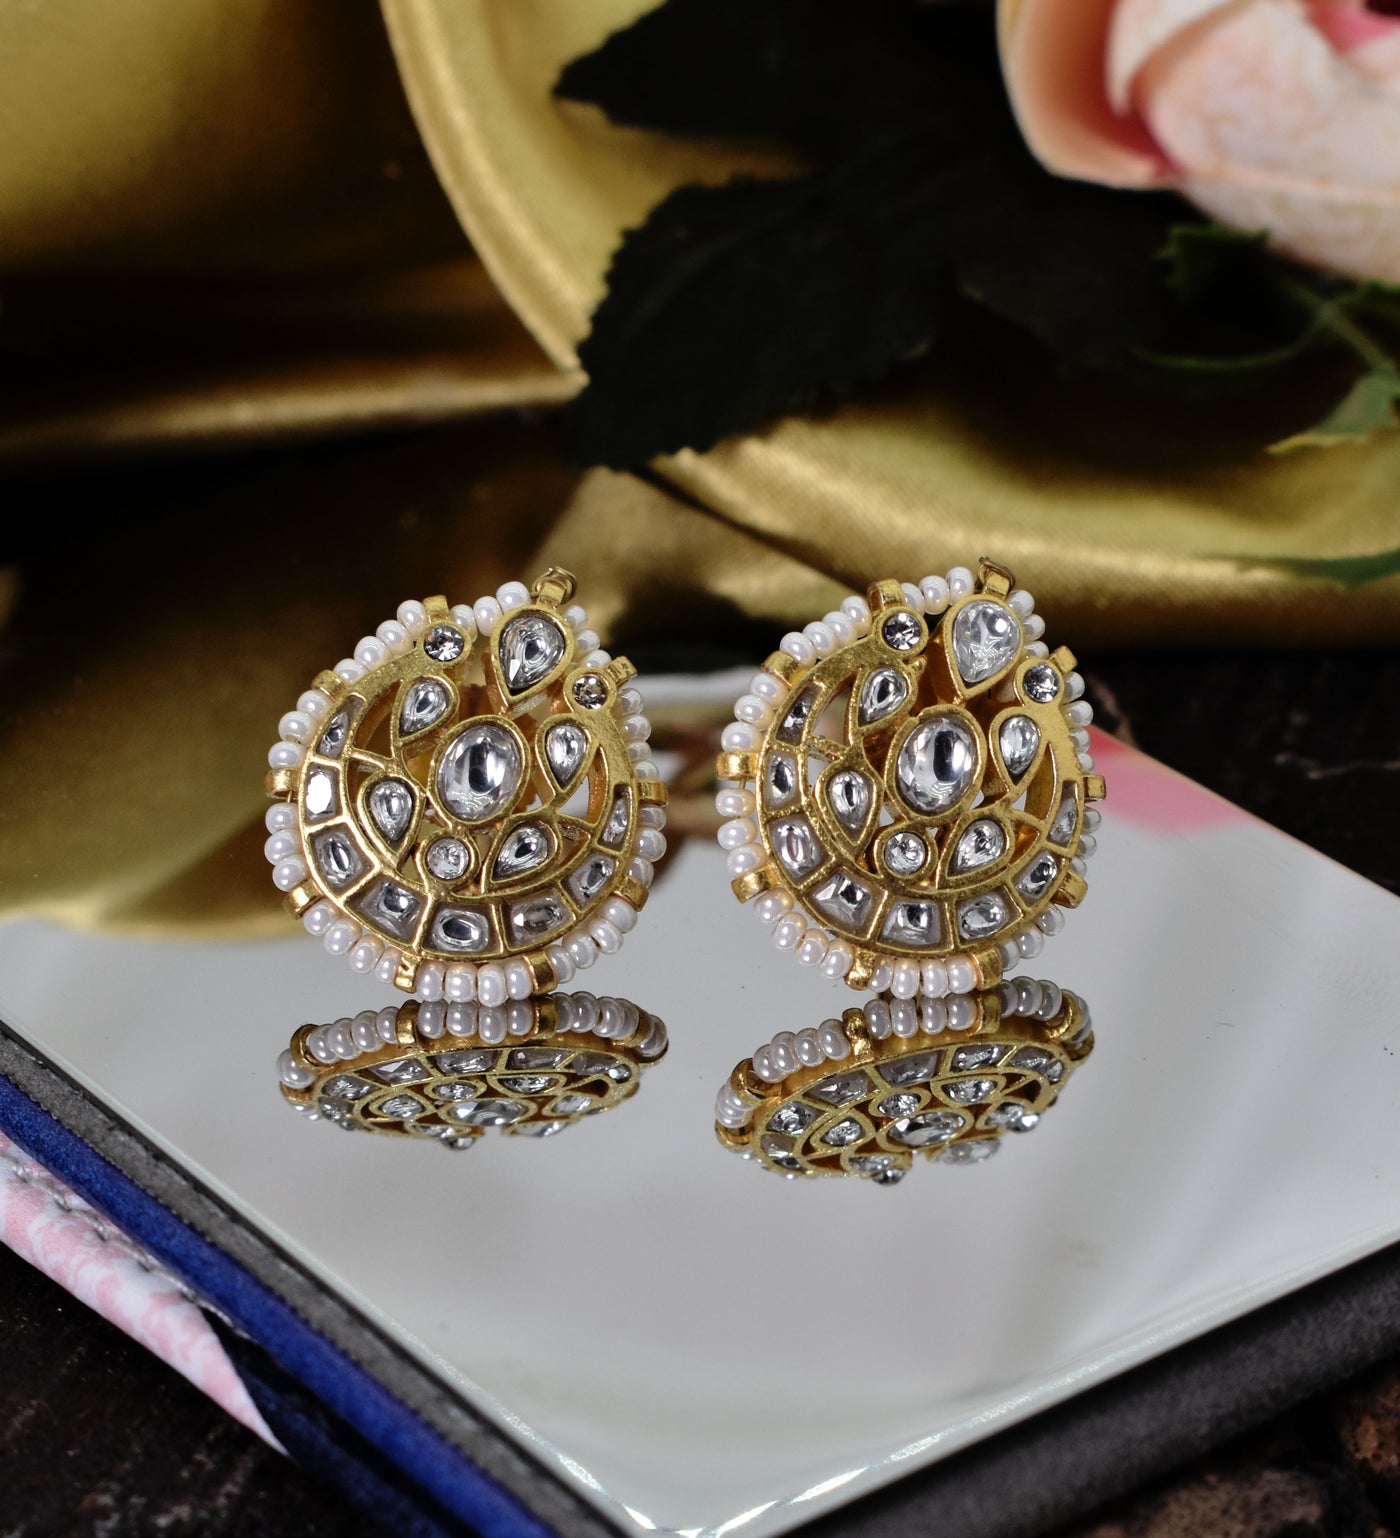 Sultana earrings